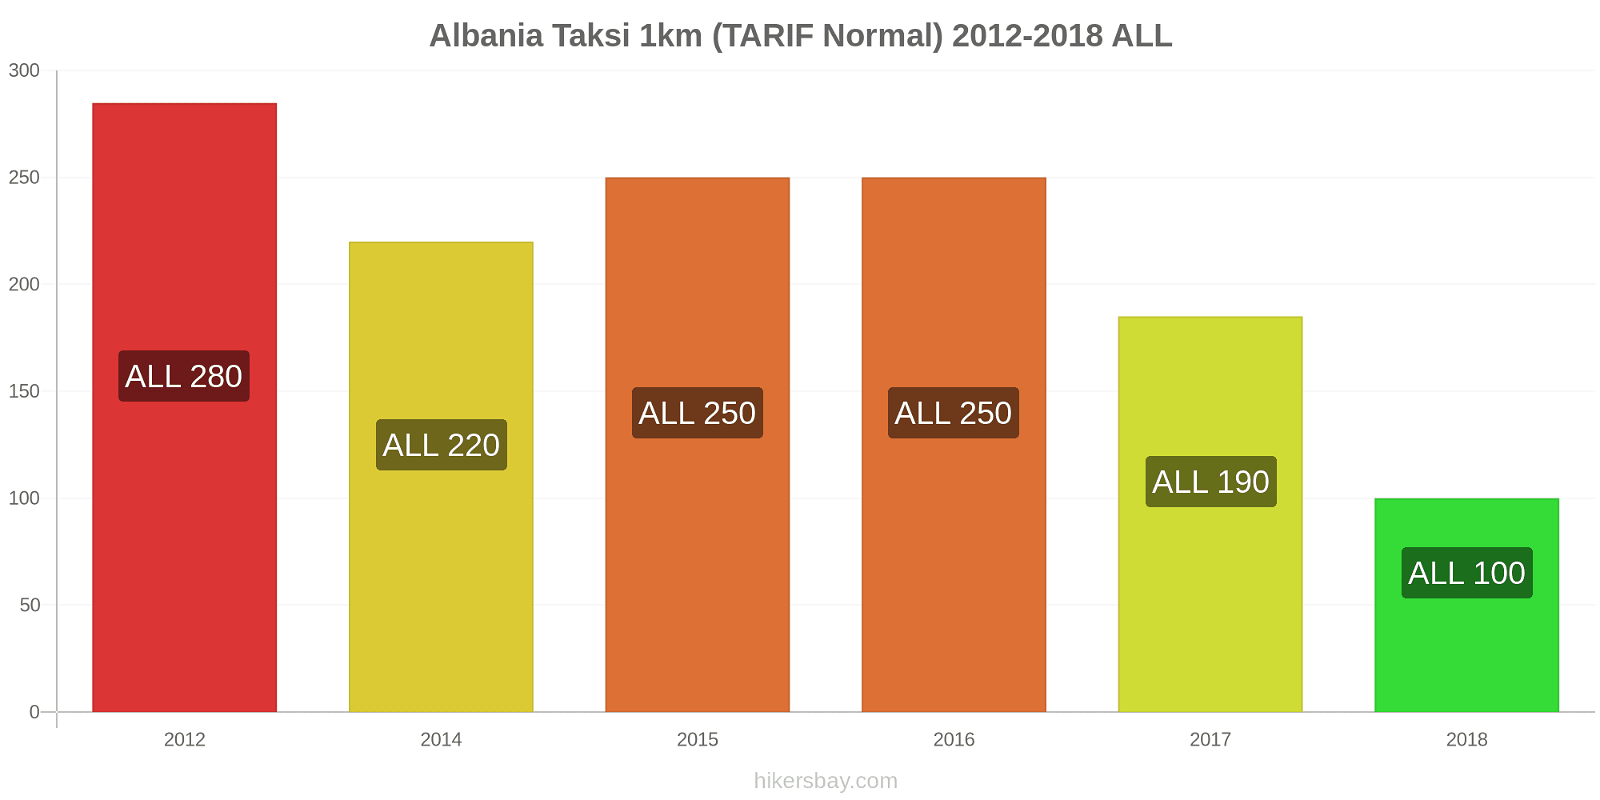 Albania perubahan harga Taksi 1km (Tarif Normal) hikersbay.com